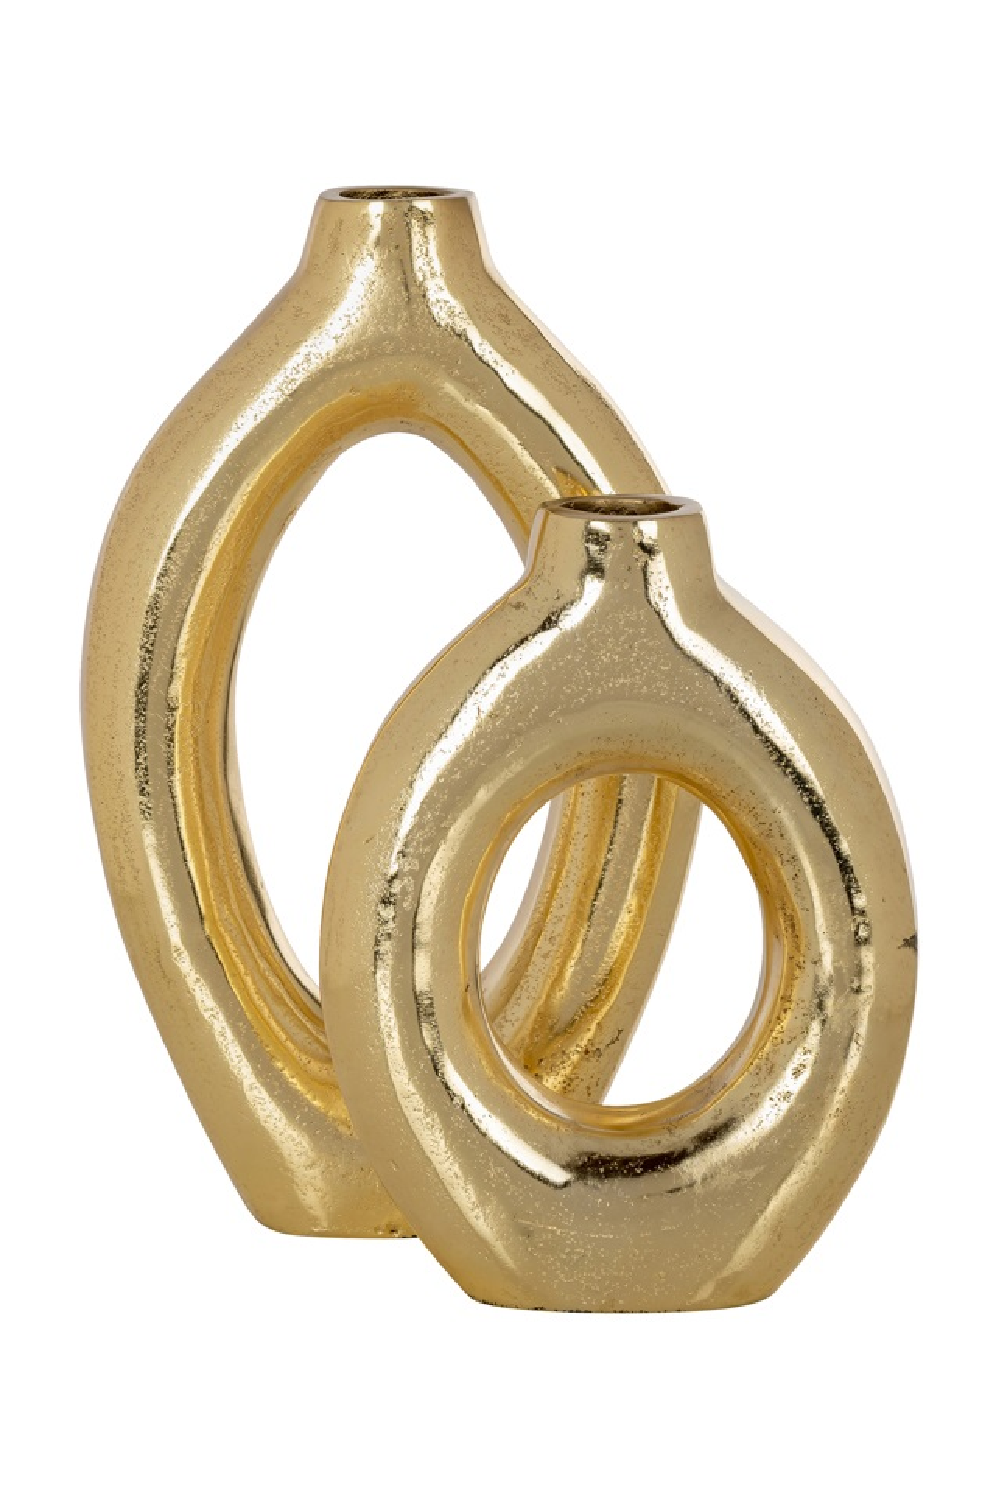 Gold Holed Modern Vase | OROA Caylie | Oroa.com